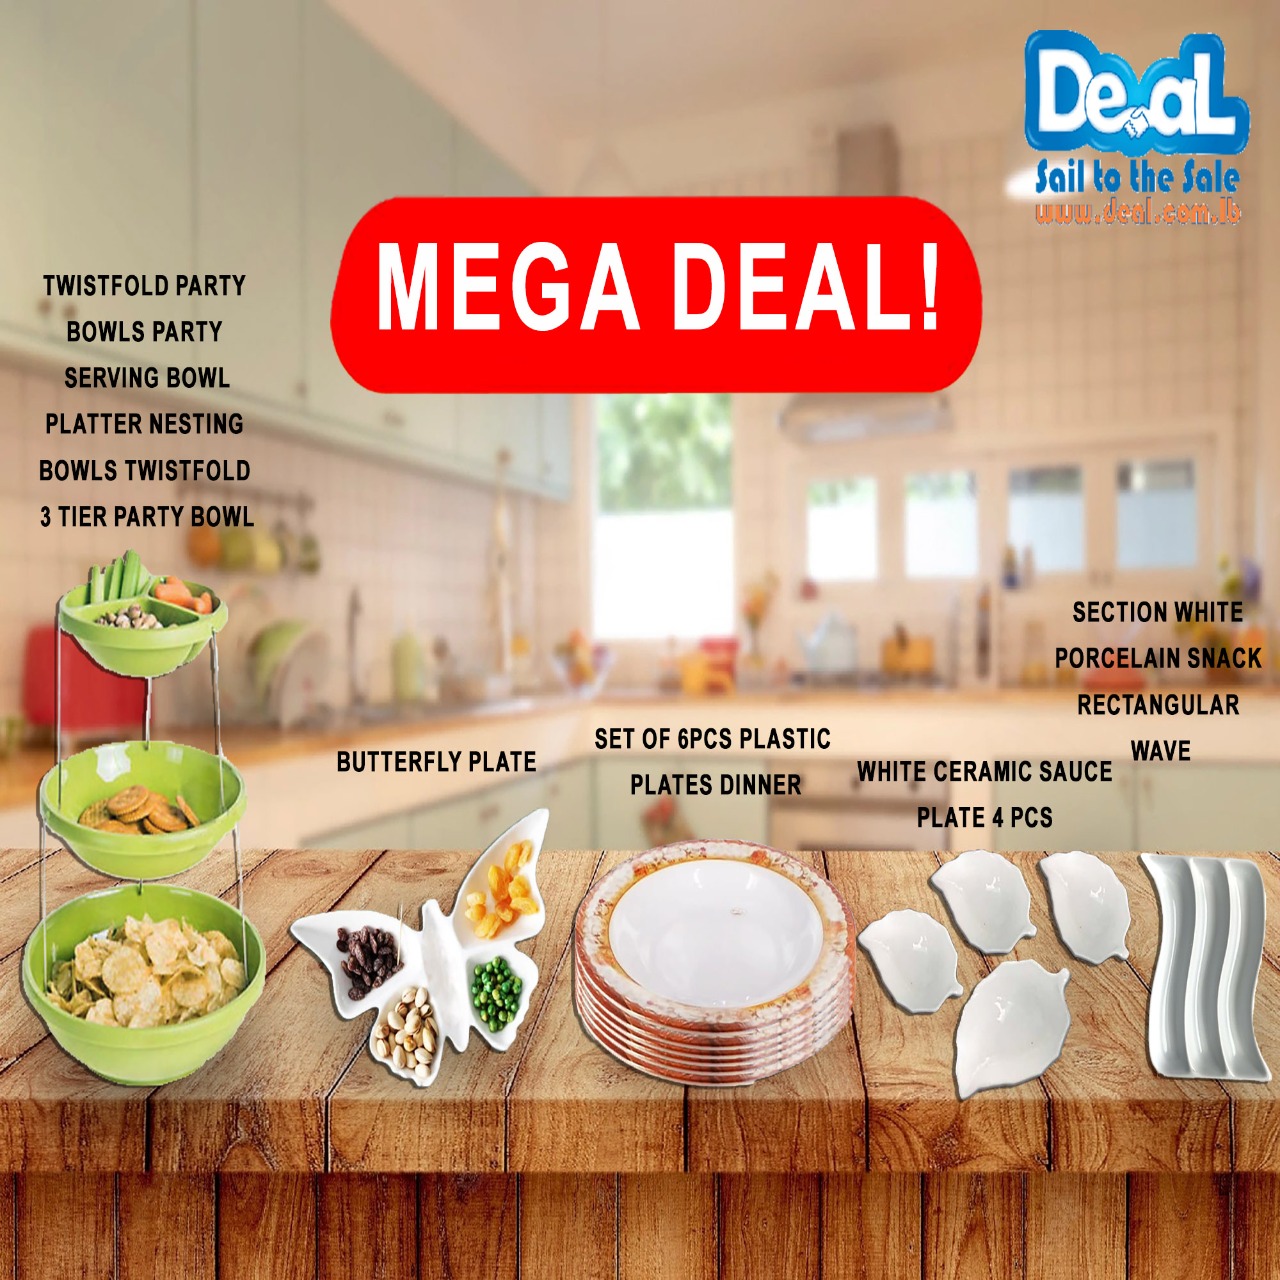 Mega deal offer of 13pcs